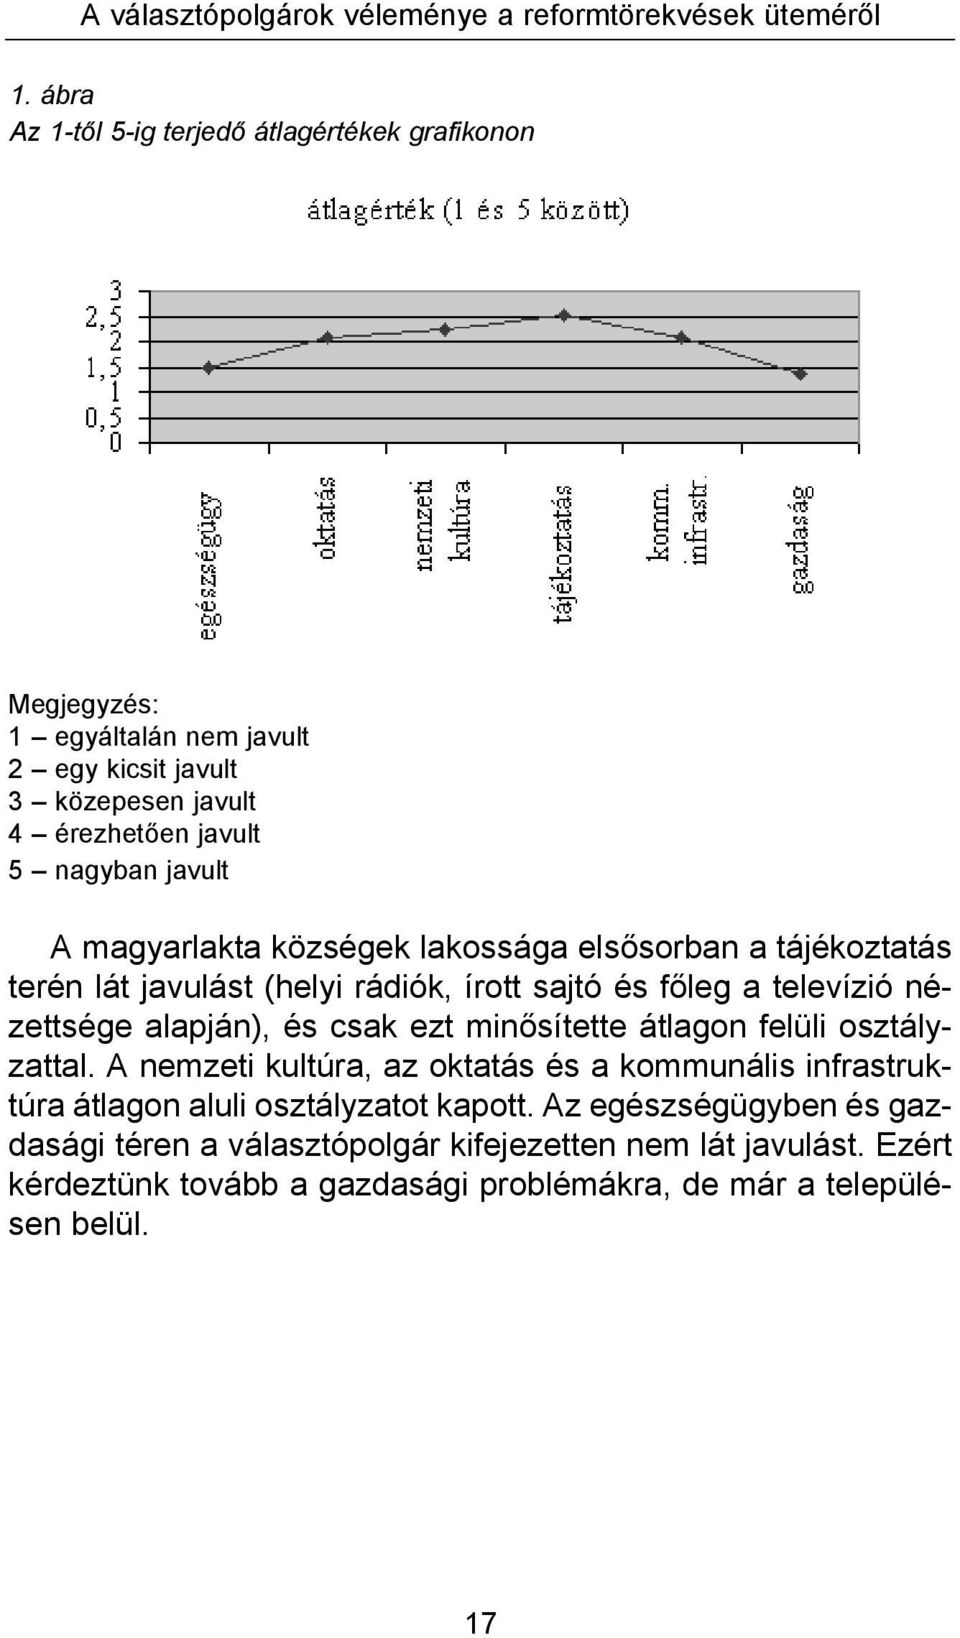 magyarlakta községek lakossága elsősorban a tájékoztatás terén lát javulást (helyi rádiók, írott sajtó és főleg a televízió nézettsége alapján), és csak ezt minősítette